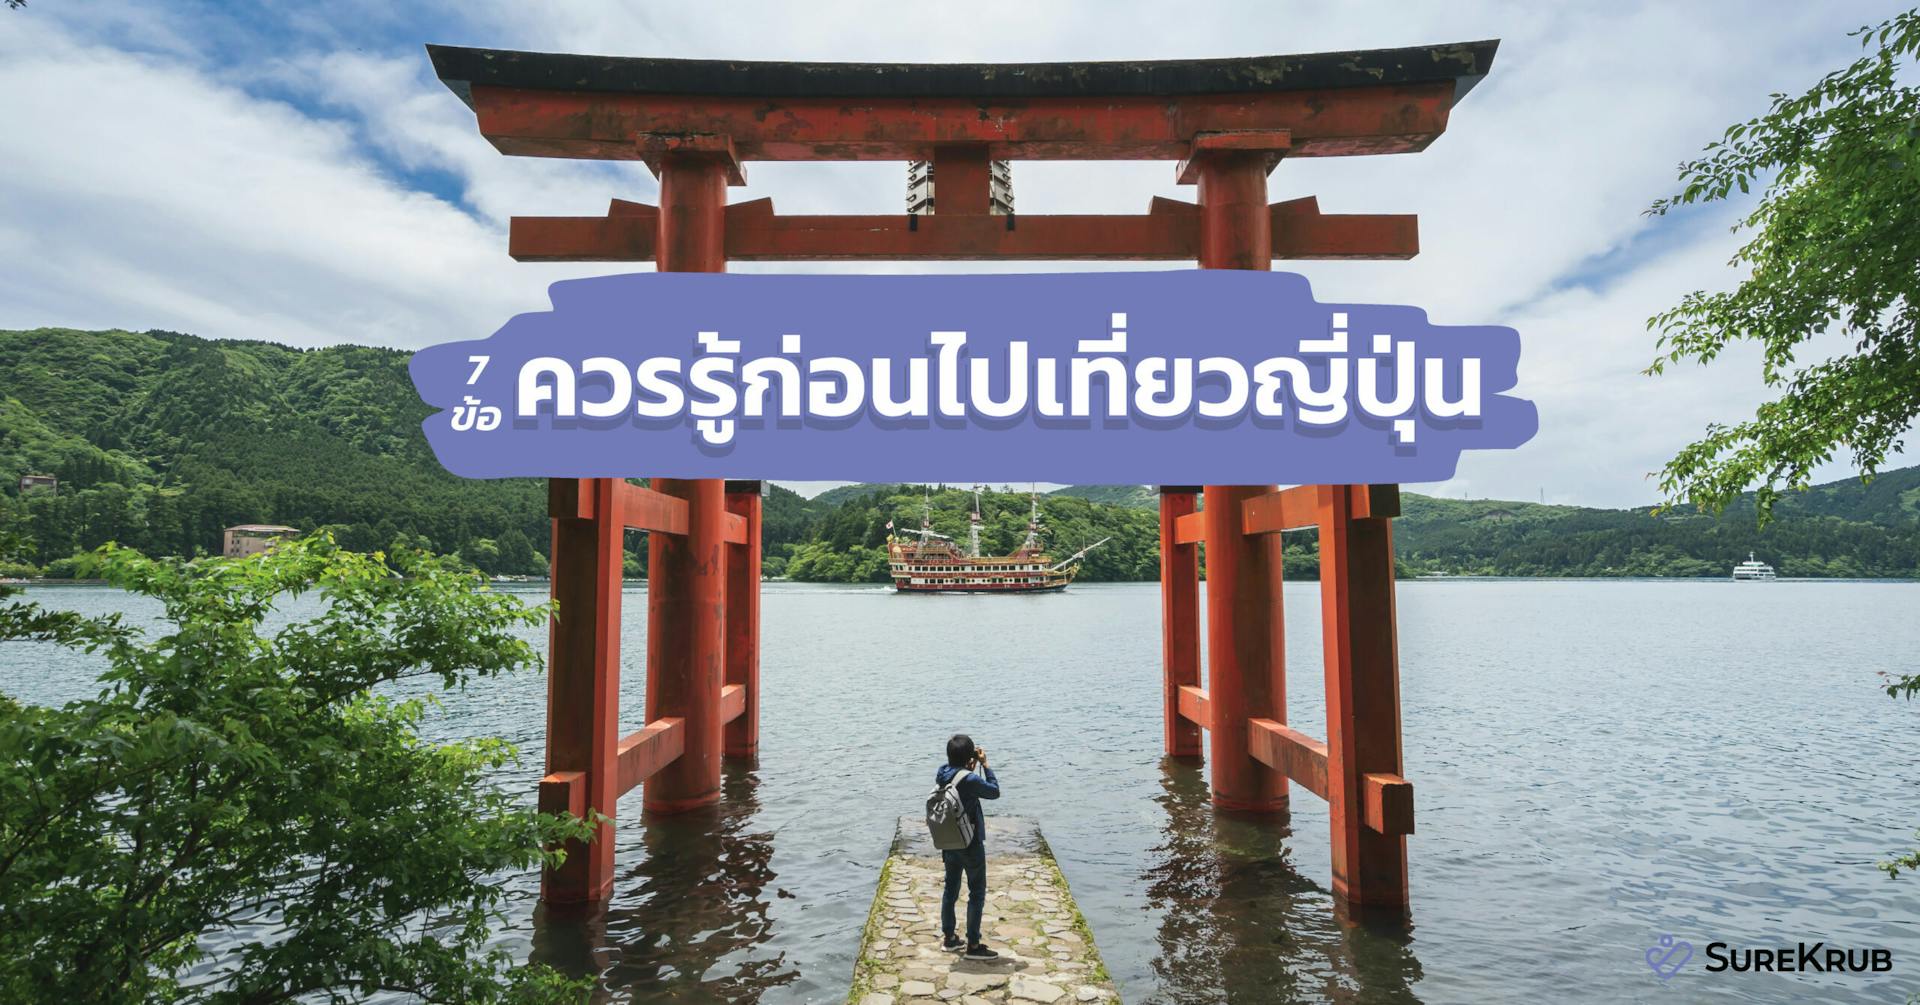 7 ข้อควรรู้ก่อนไปเที่ยวญี่ปุ่น จำเป็นไหมประกันเดินทางญี่ปุ่น